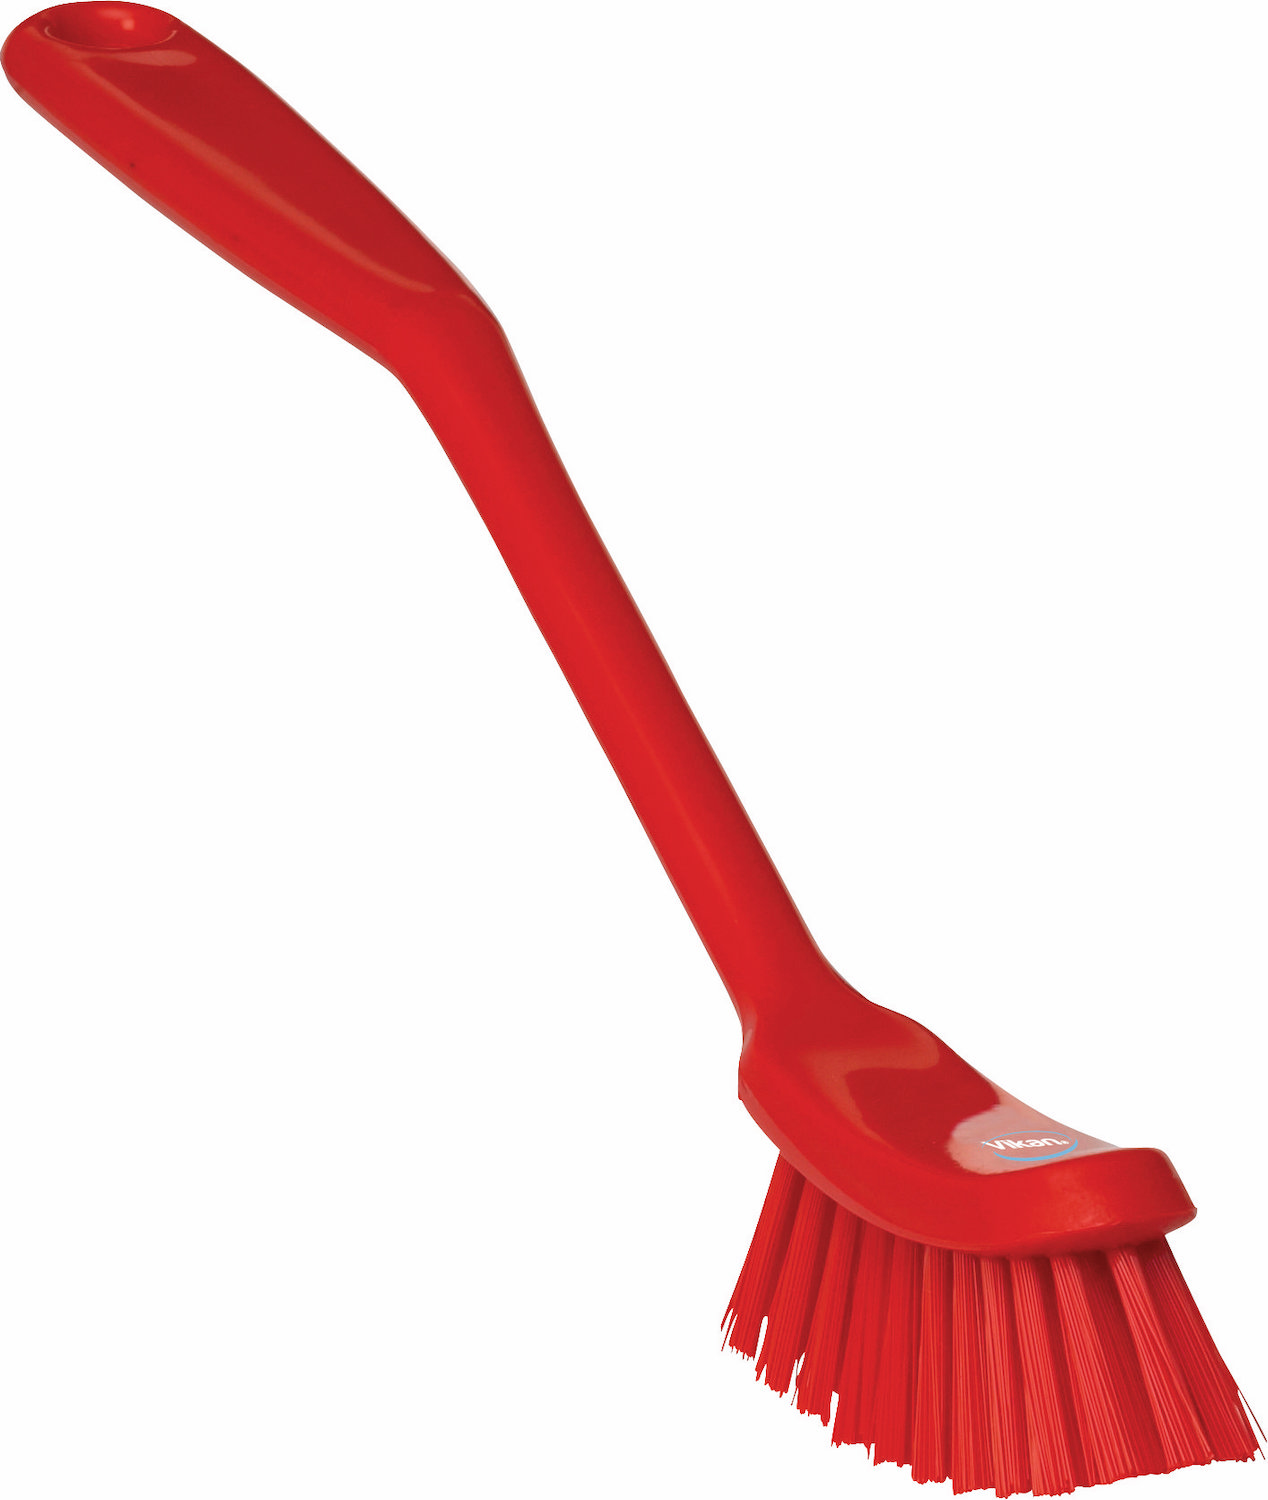 Dish Brush, 290 mm, Medium, Red